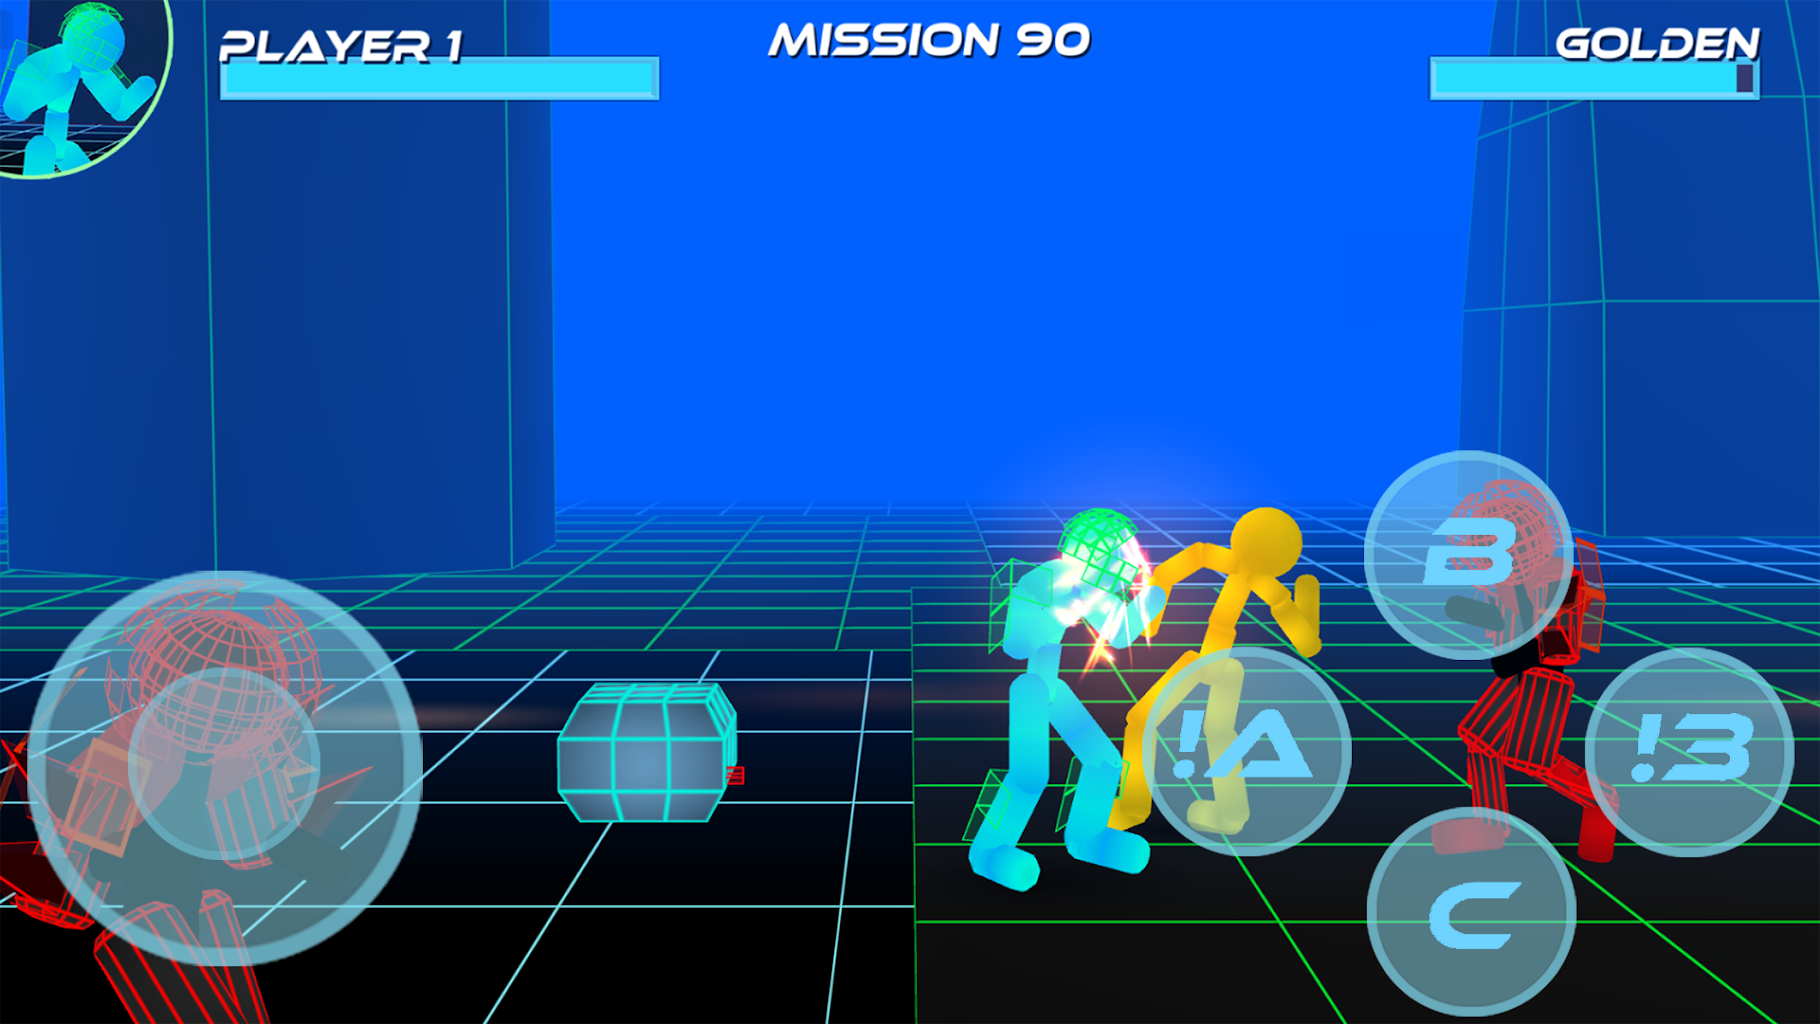 Play Stickman Neon Warriors Sword Fighting